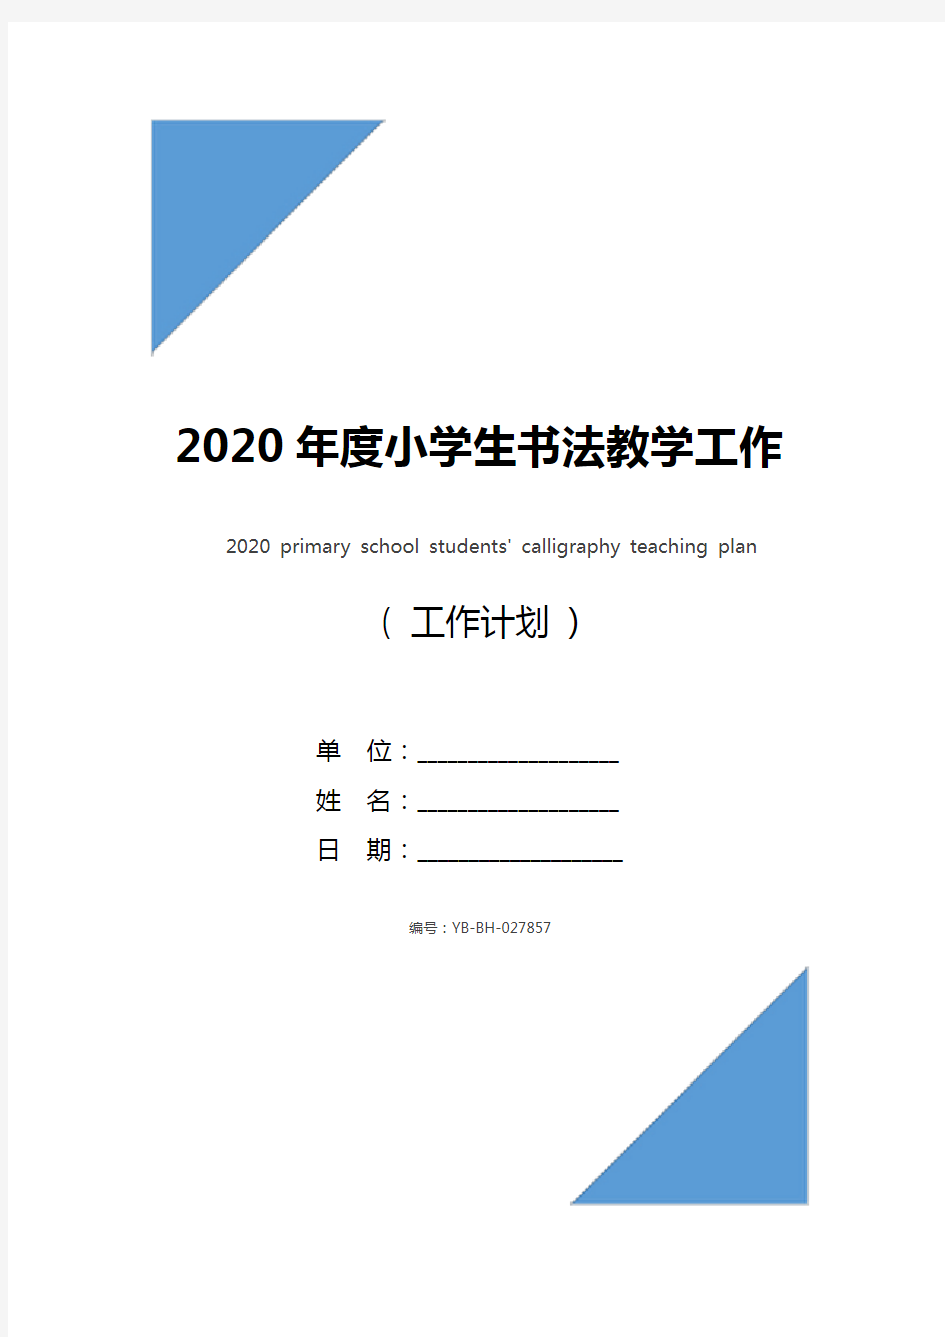 2020年度小学生书法教学工作计划